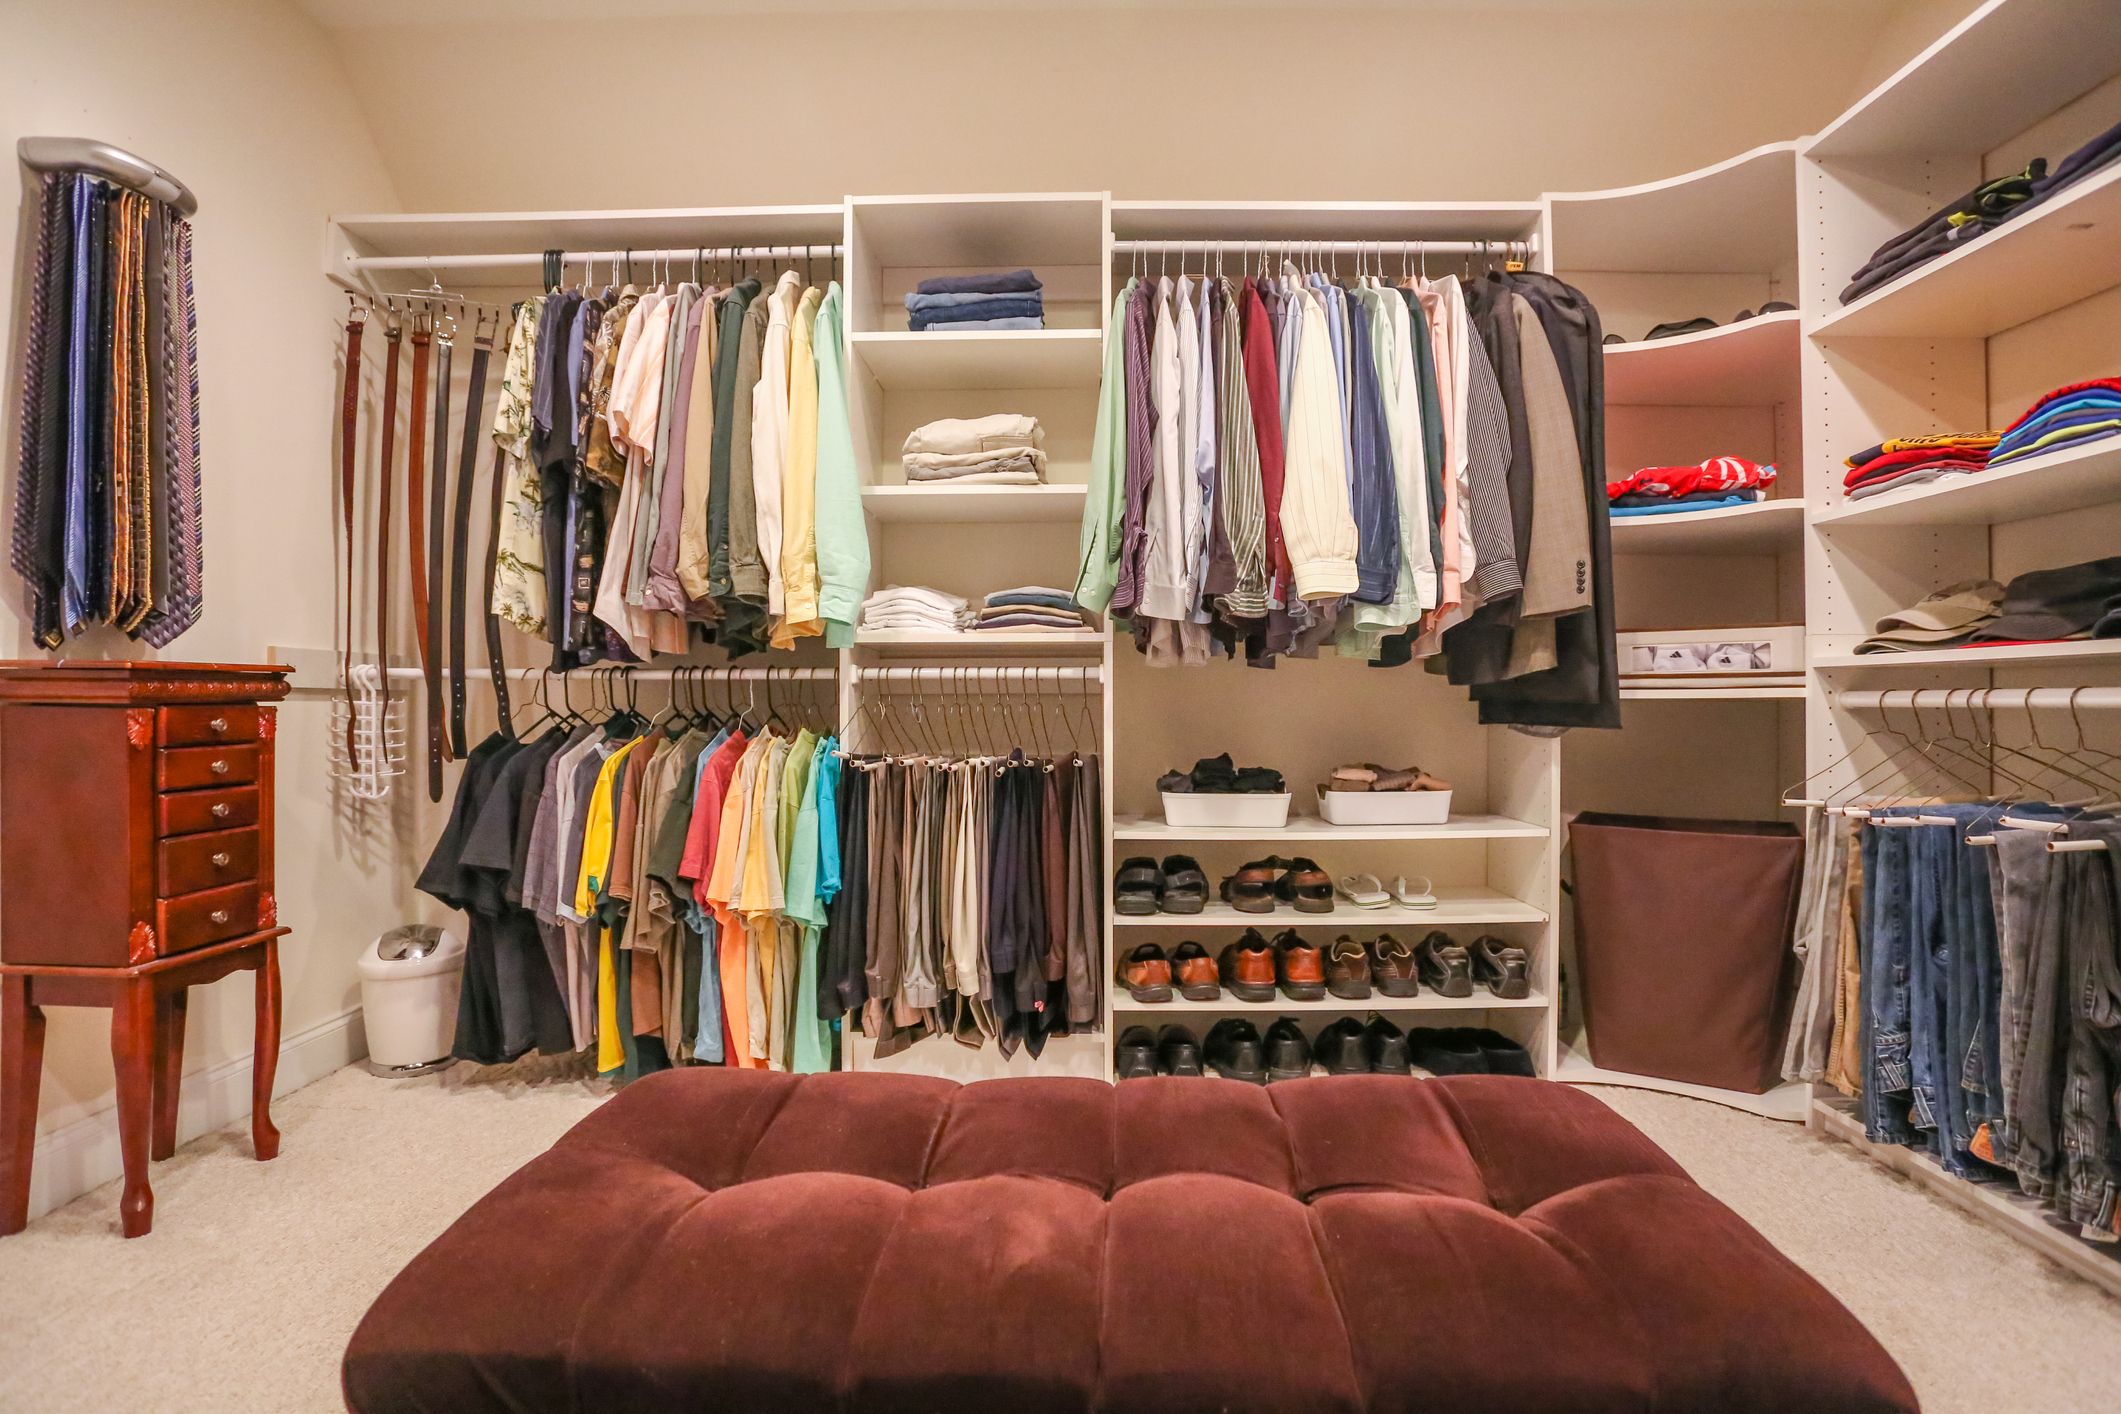 Benefits of Customizing Your Closet